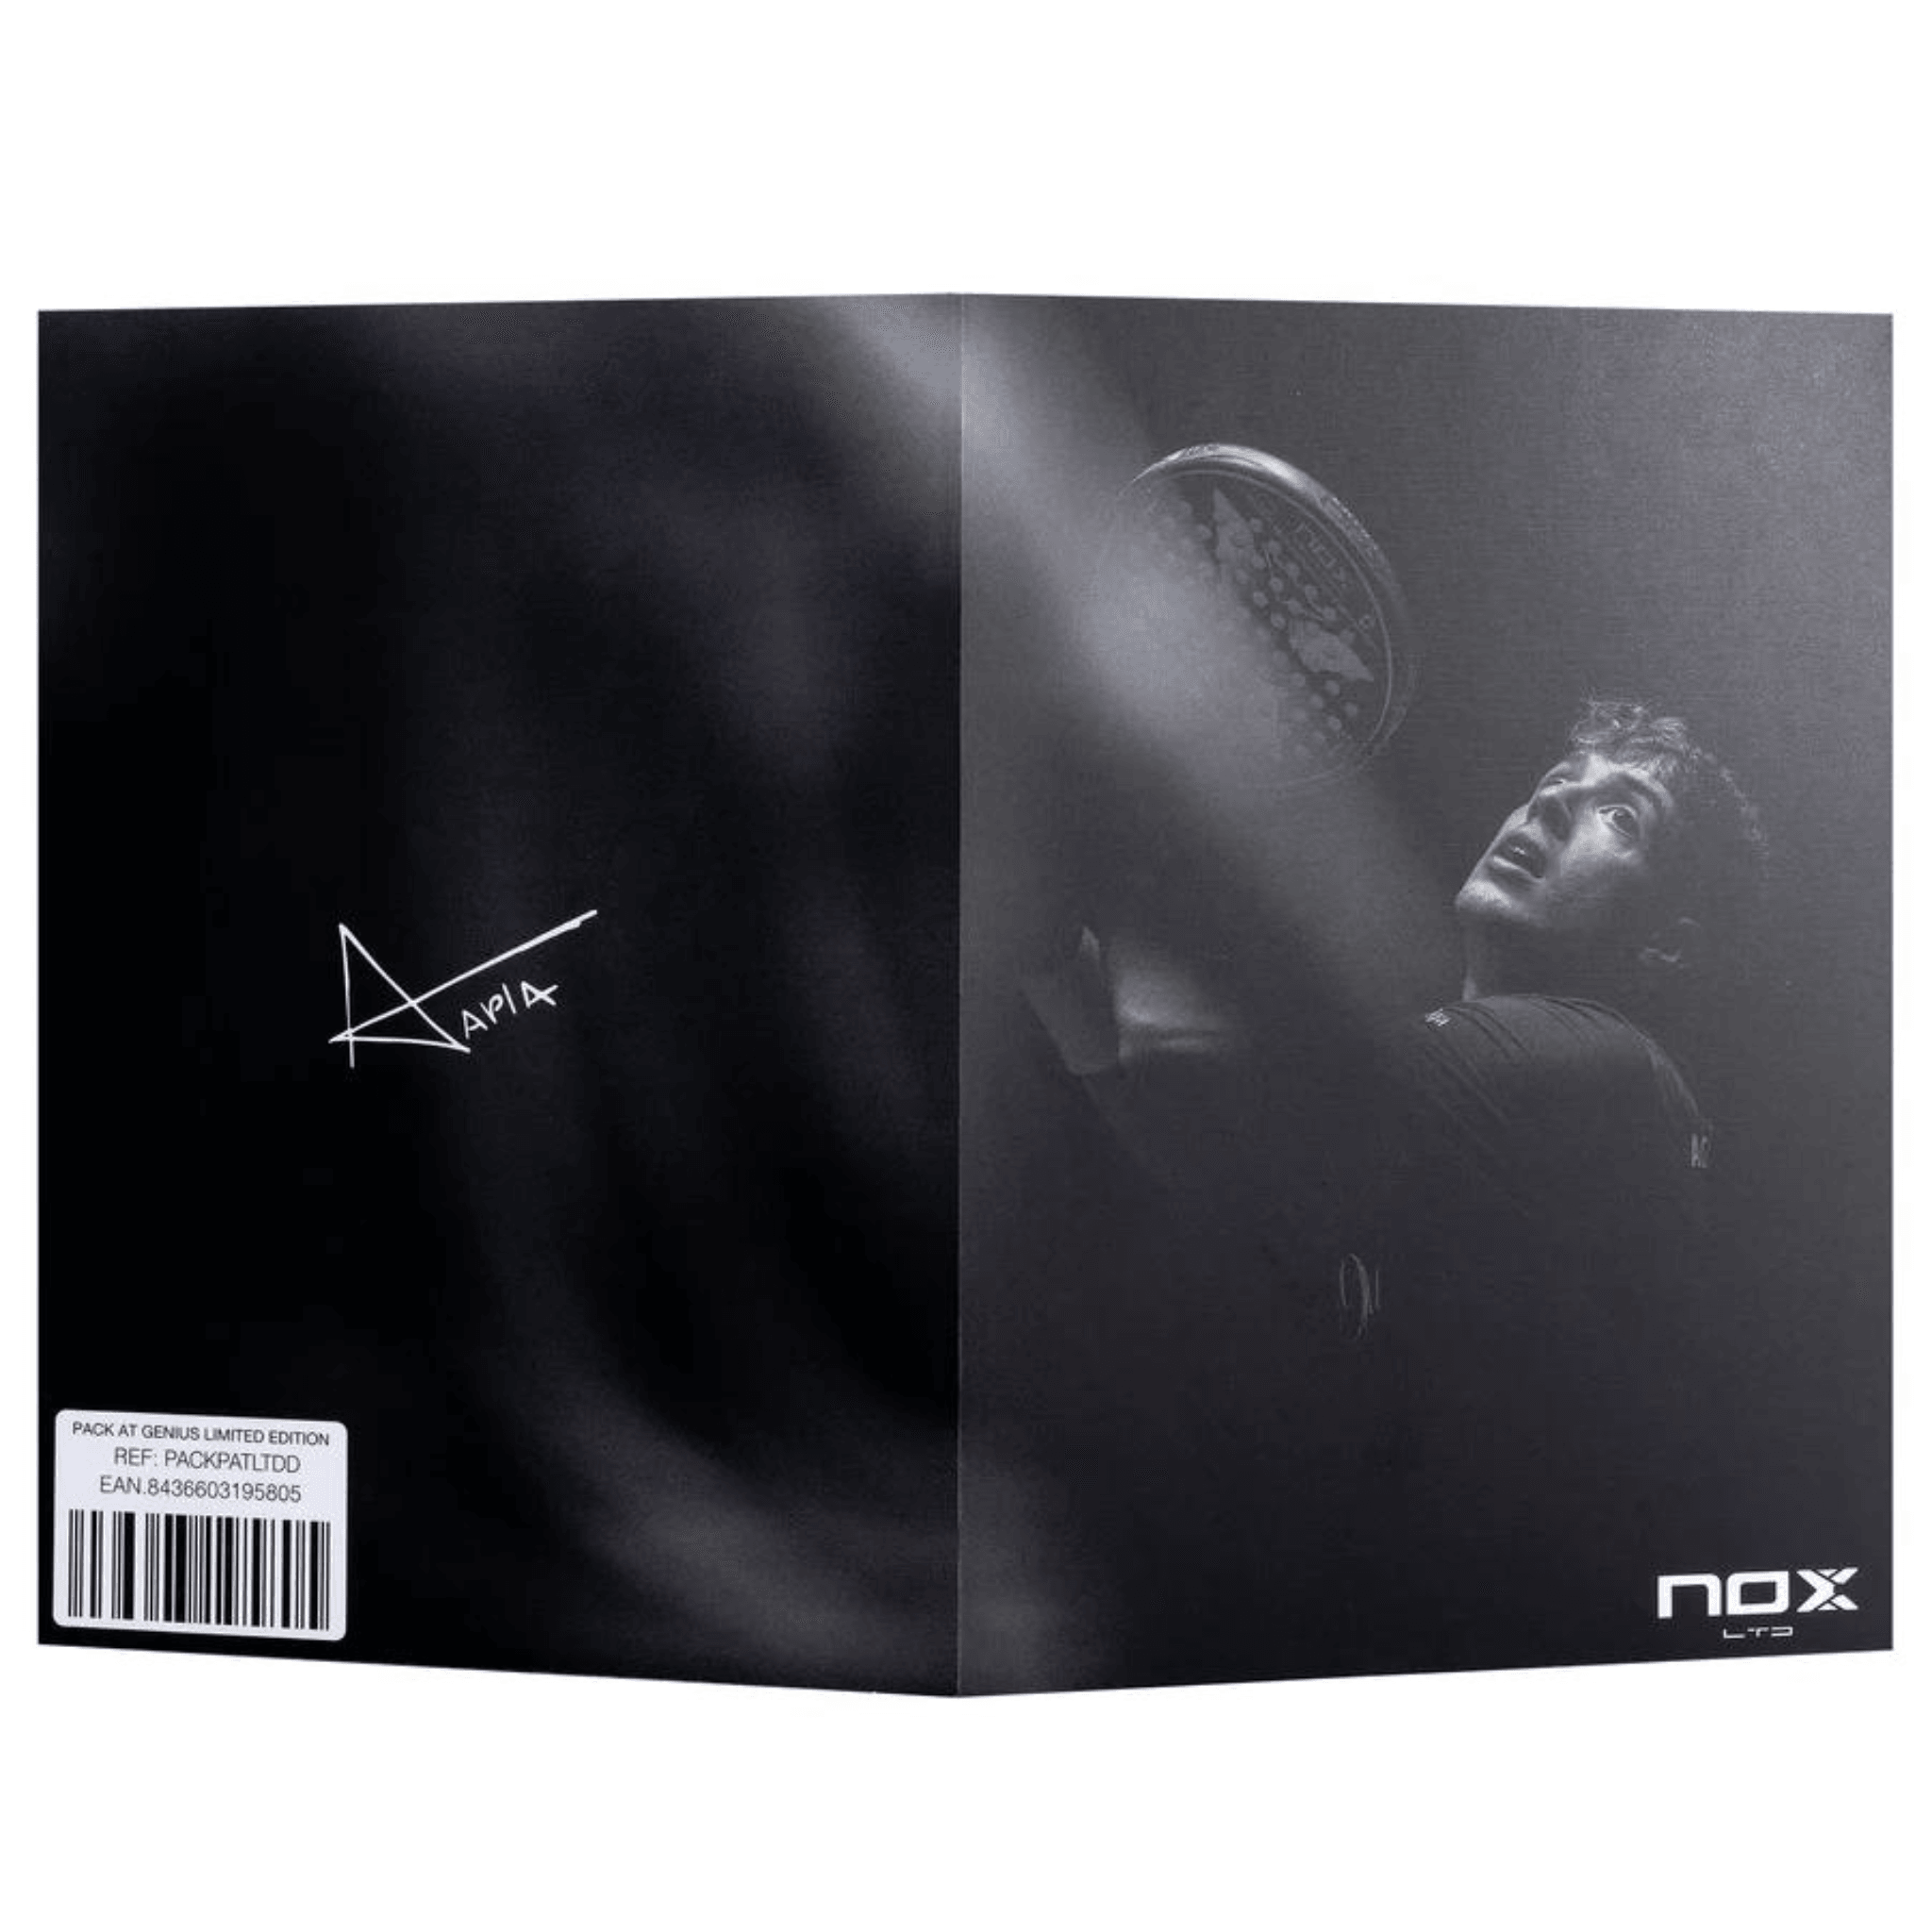 NOX Padel Racket AT limited Edition 2024 - Casas Padel